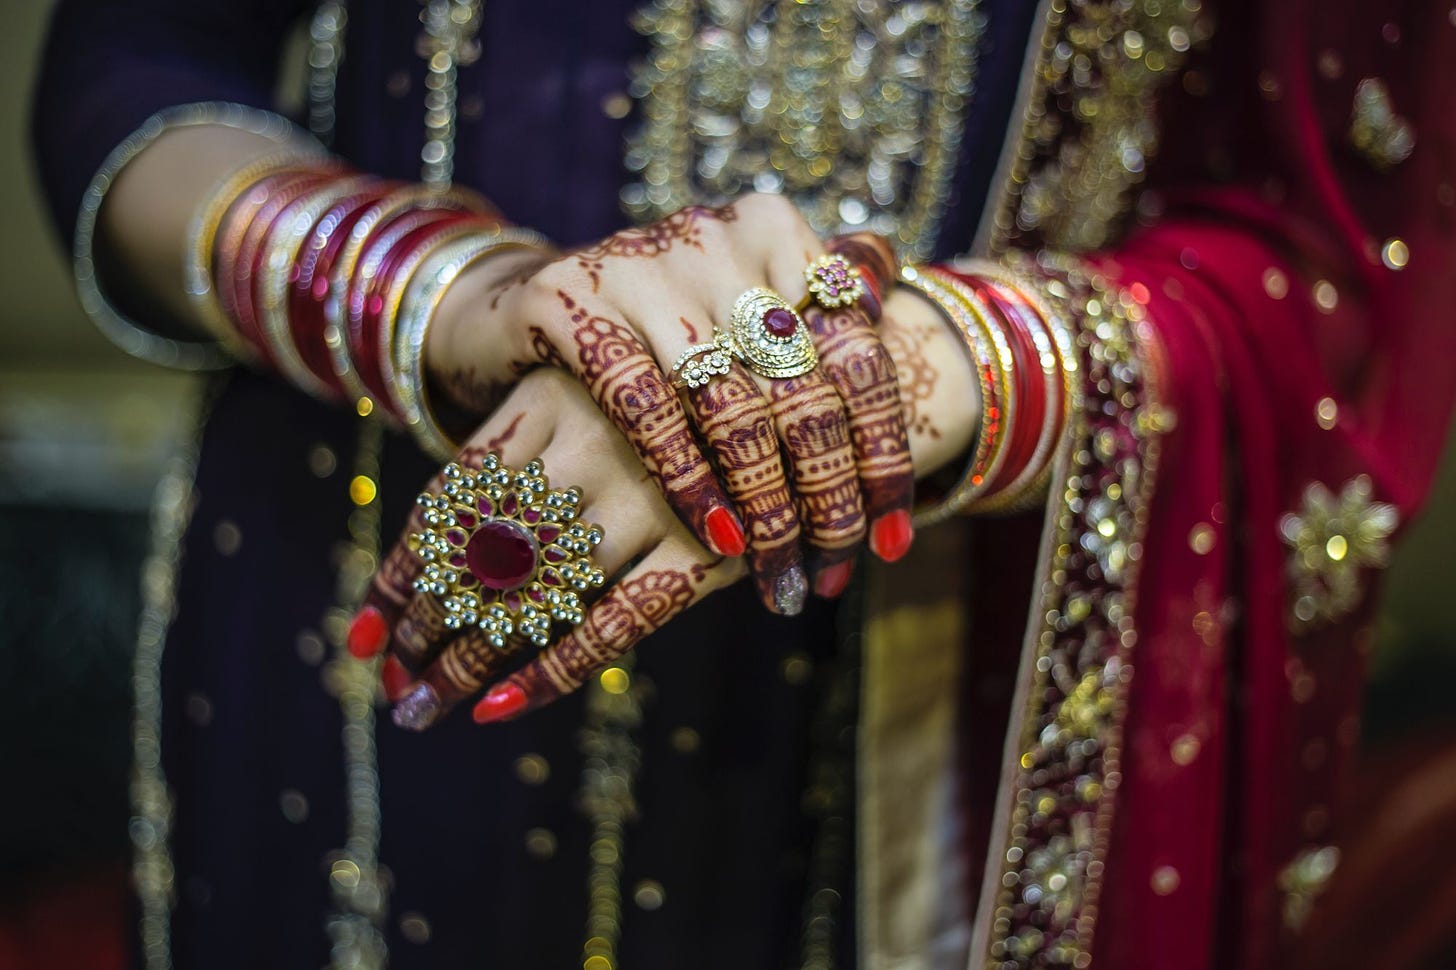 Photo of Pakistani woman's hands by Qazi Ikram Ul Haq from Pexels